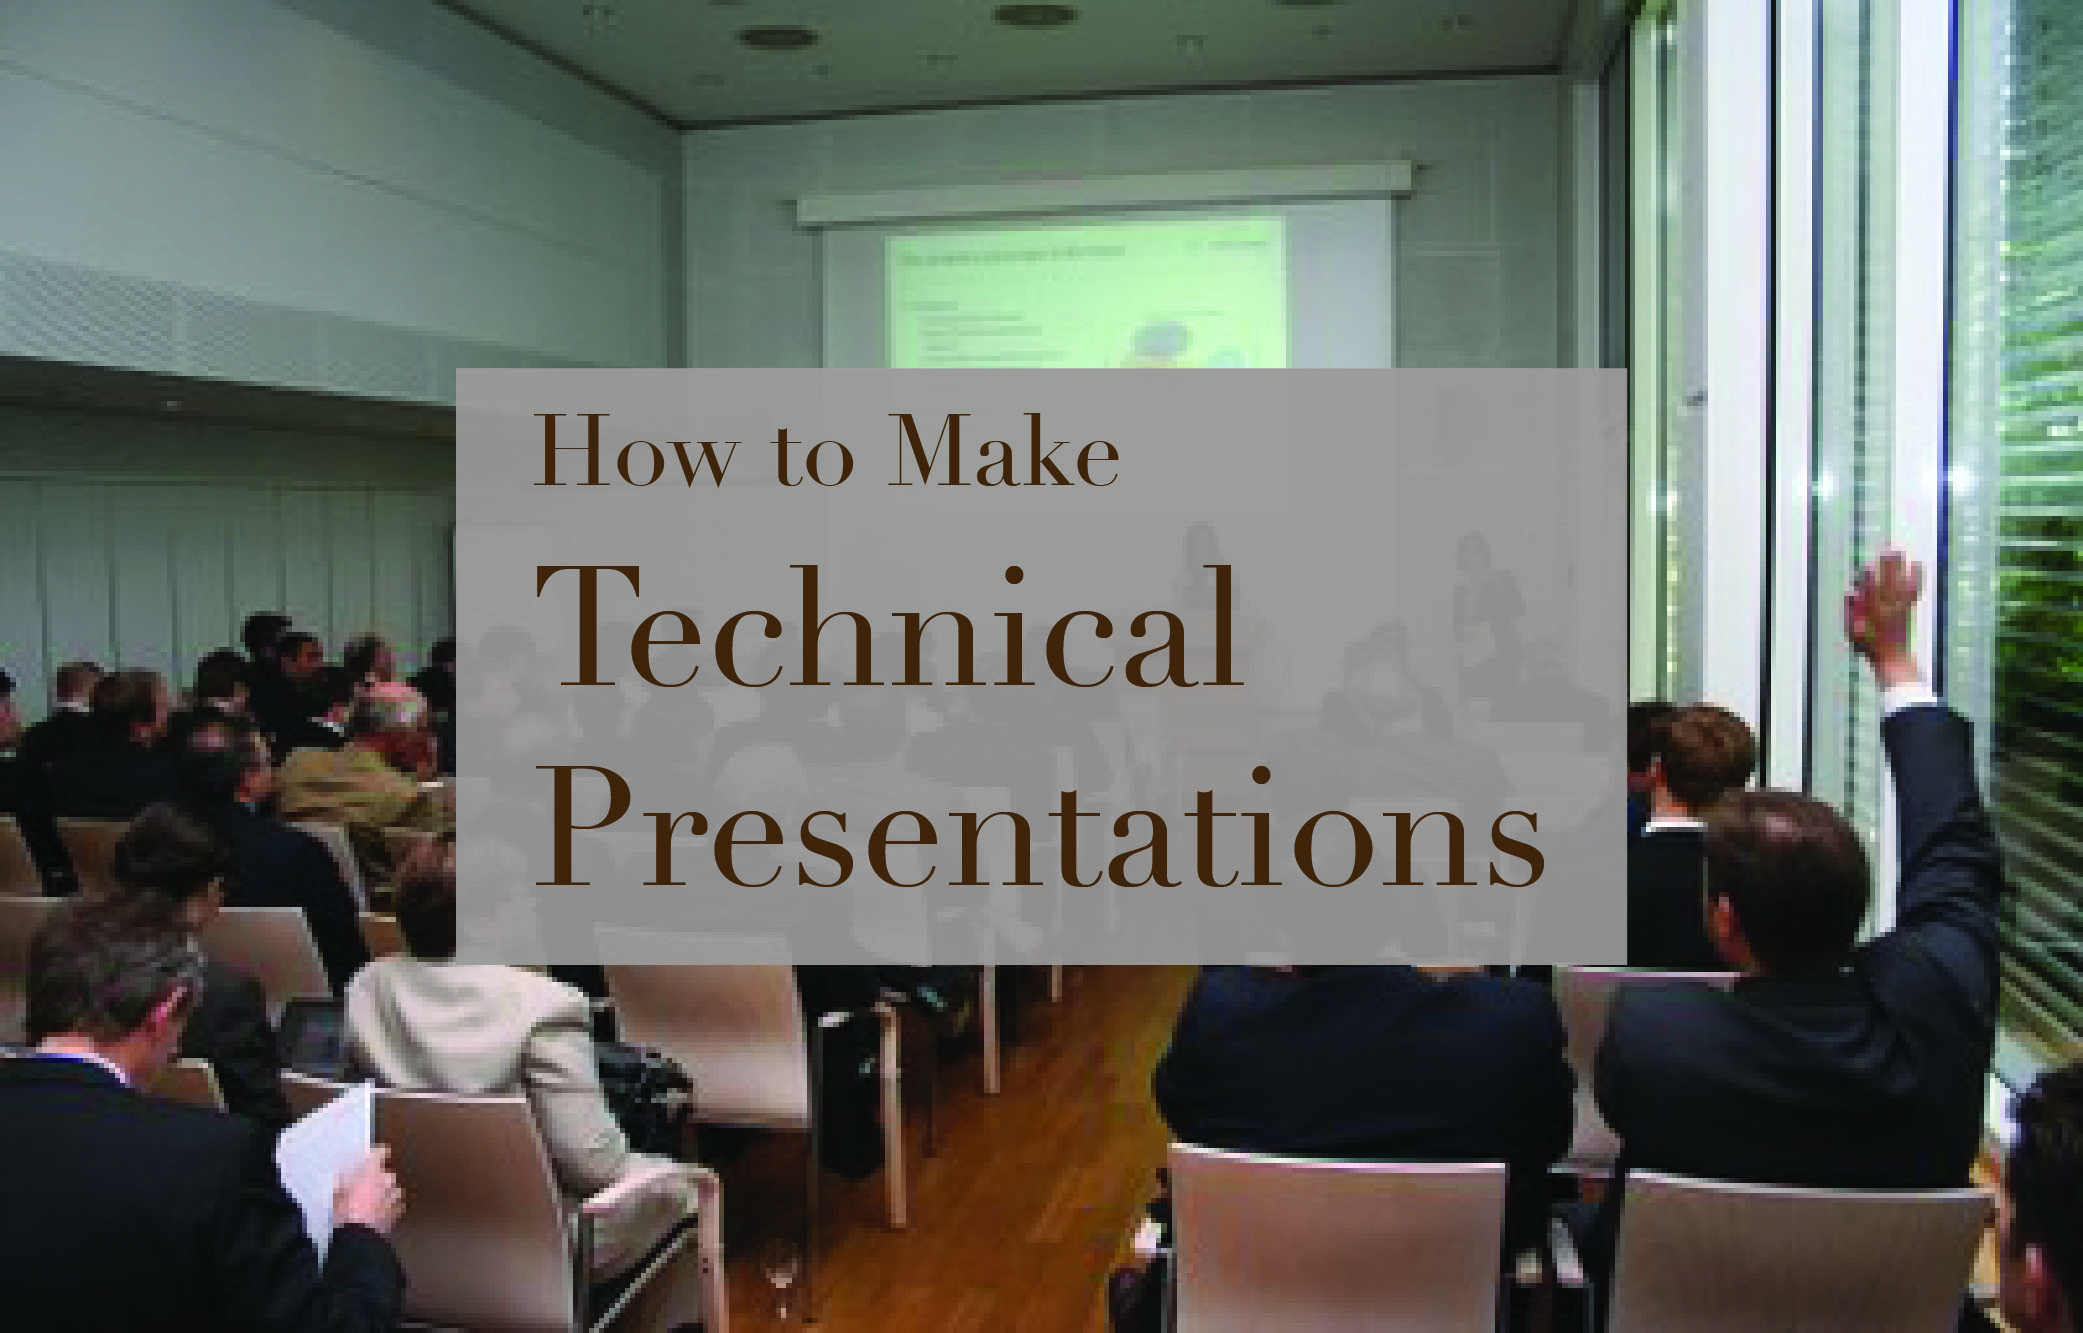 آموزش تهیه ارایه های فنی- How to make technical presentations